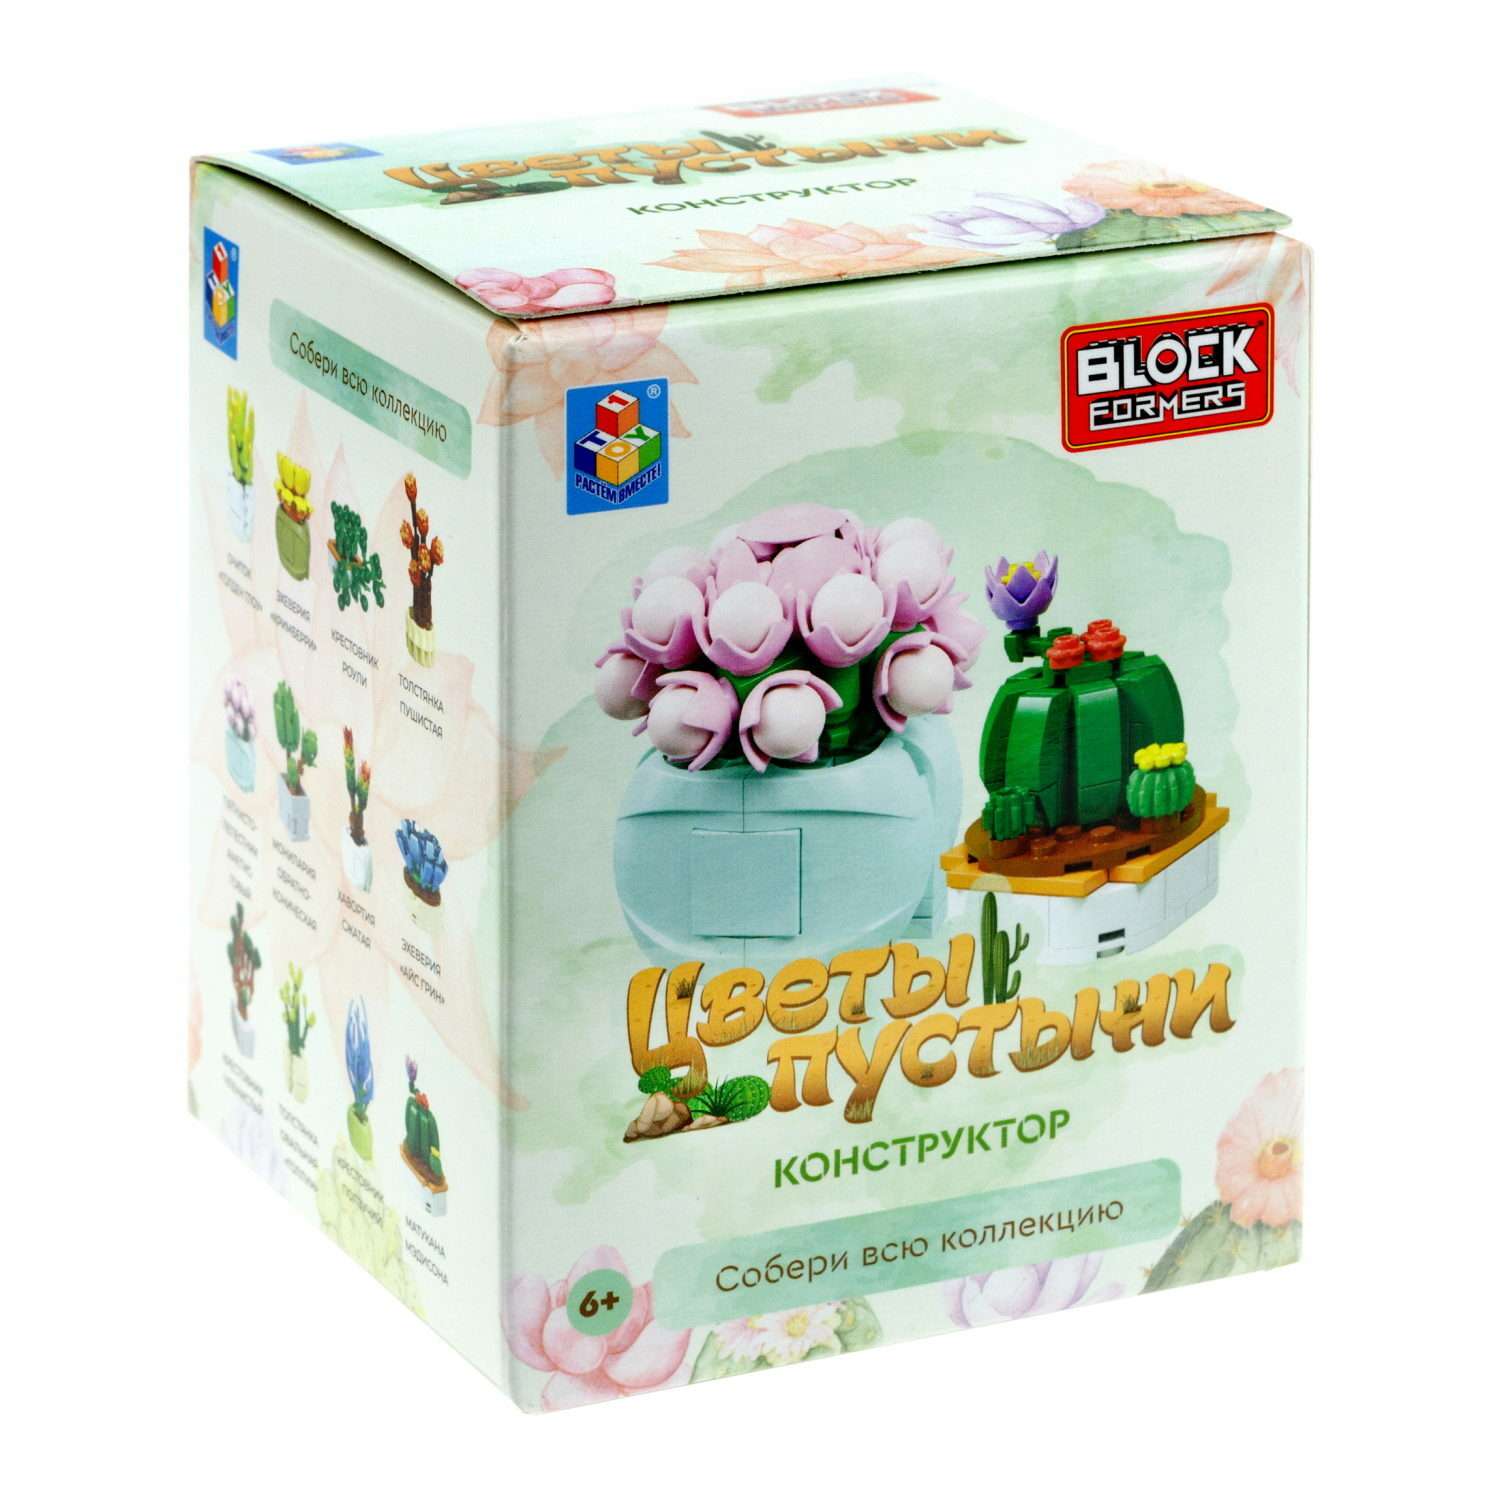 Игрушка- сюрприз Blockformers 1Toy конструктор Цветы пустыни в коробке - фото 1